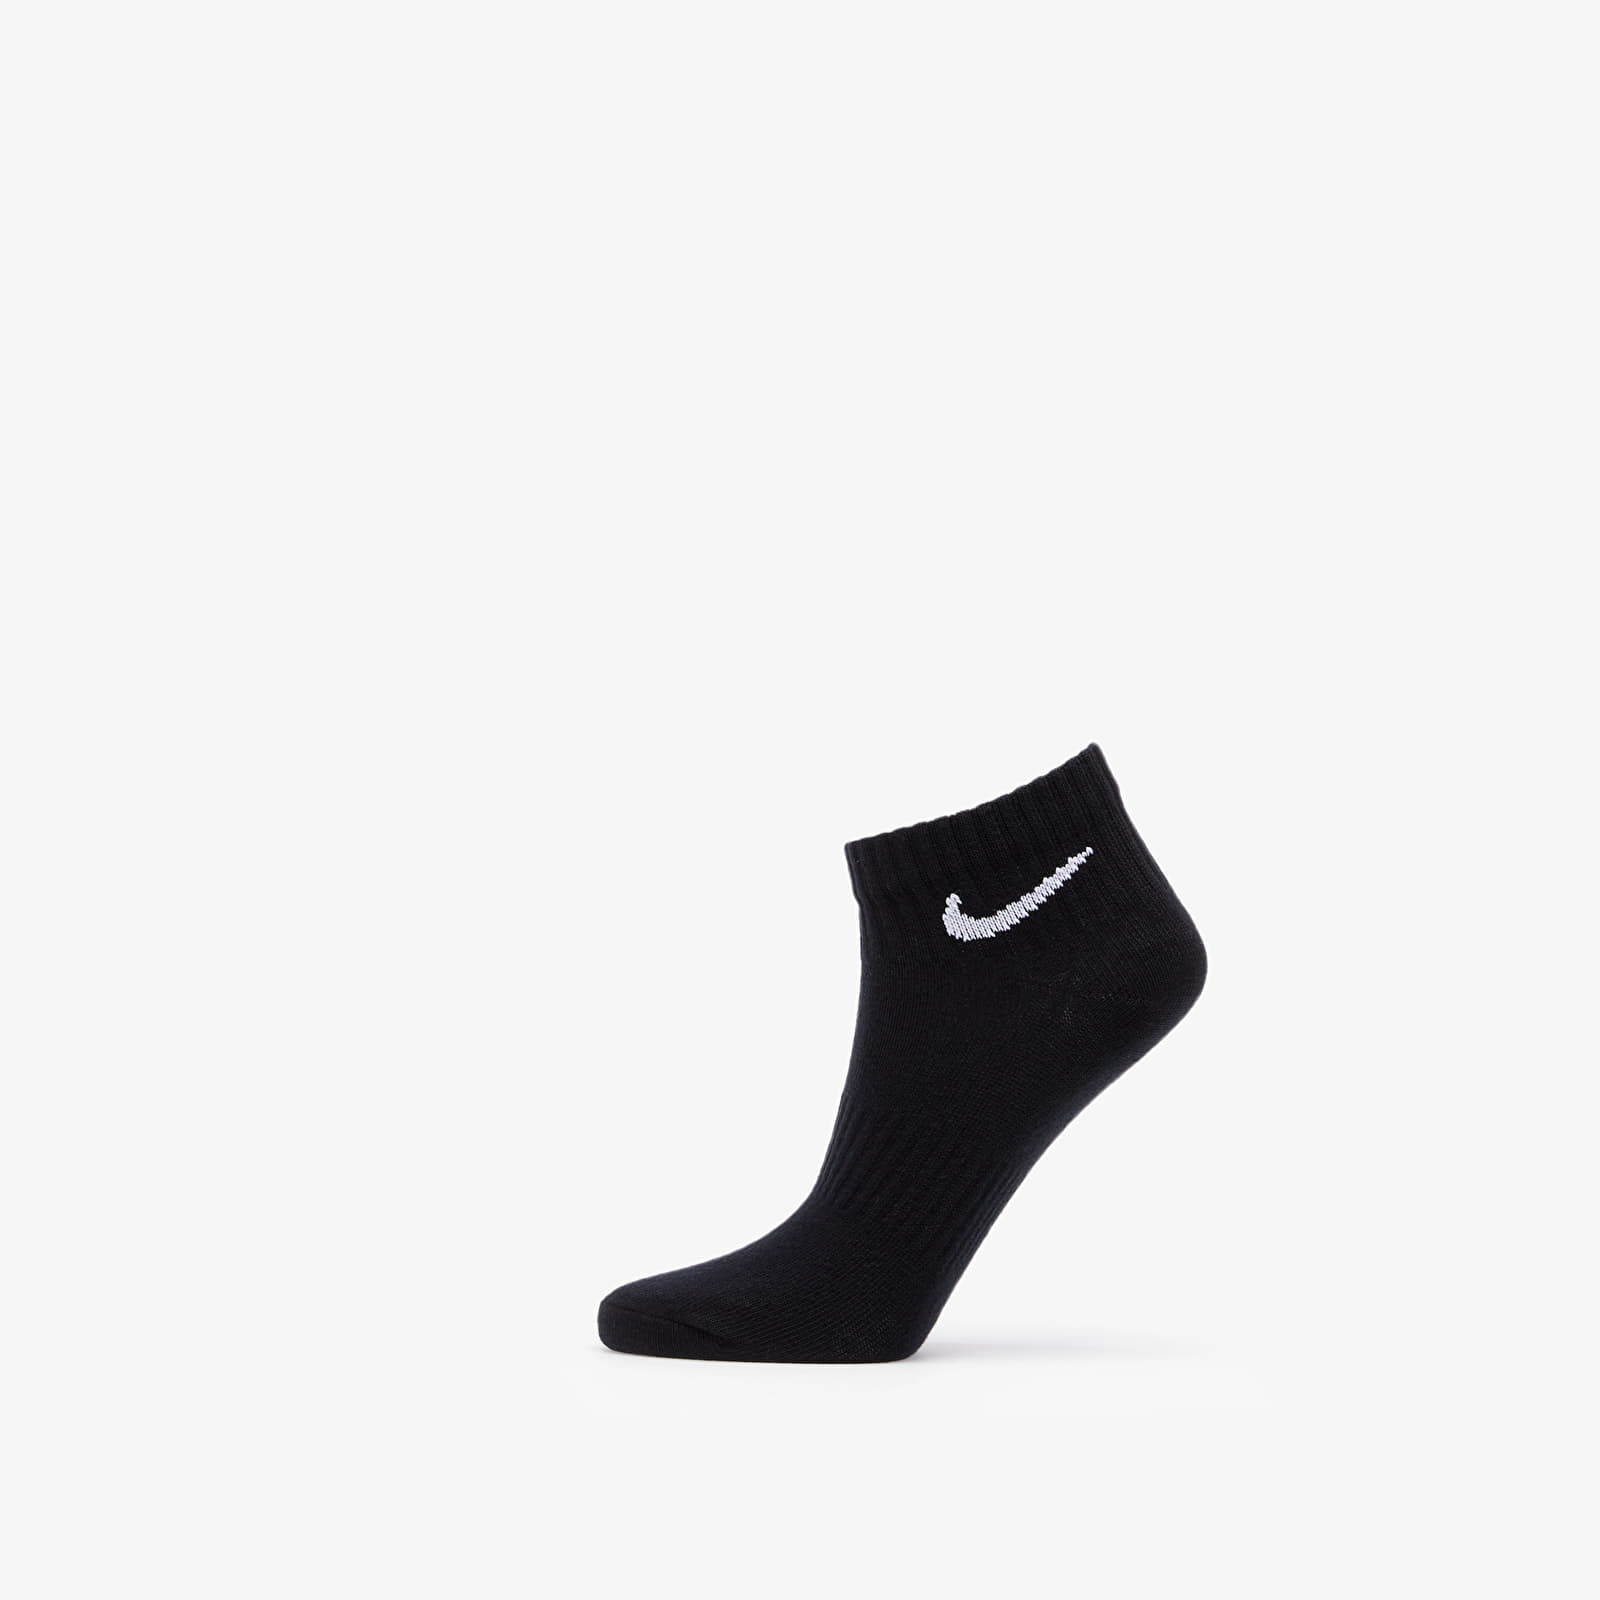 Socks Nike Everyday Lightweight Ankle 3 Pack Socks Black/ White/ Grey